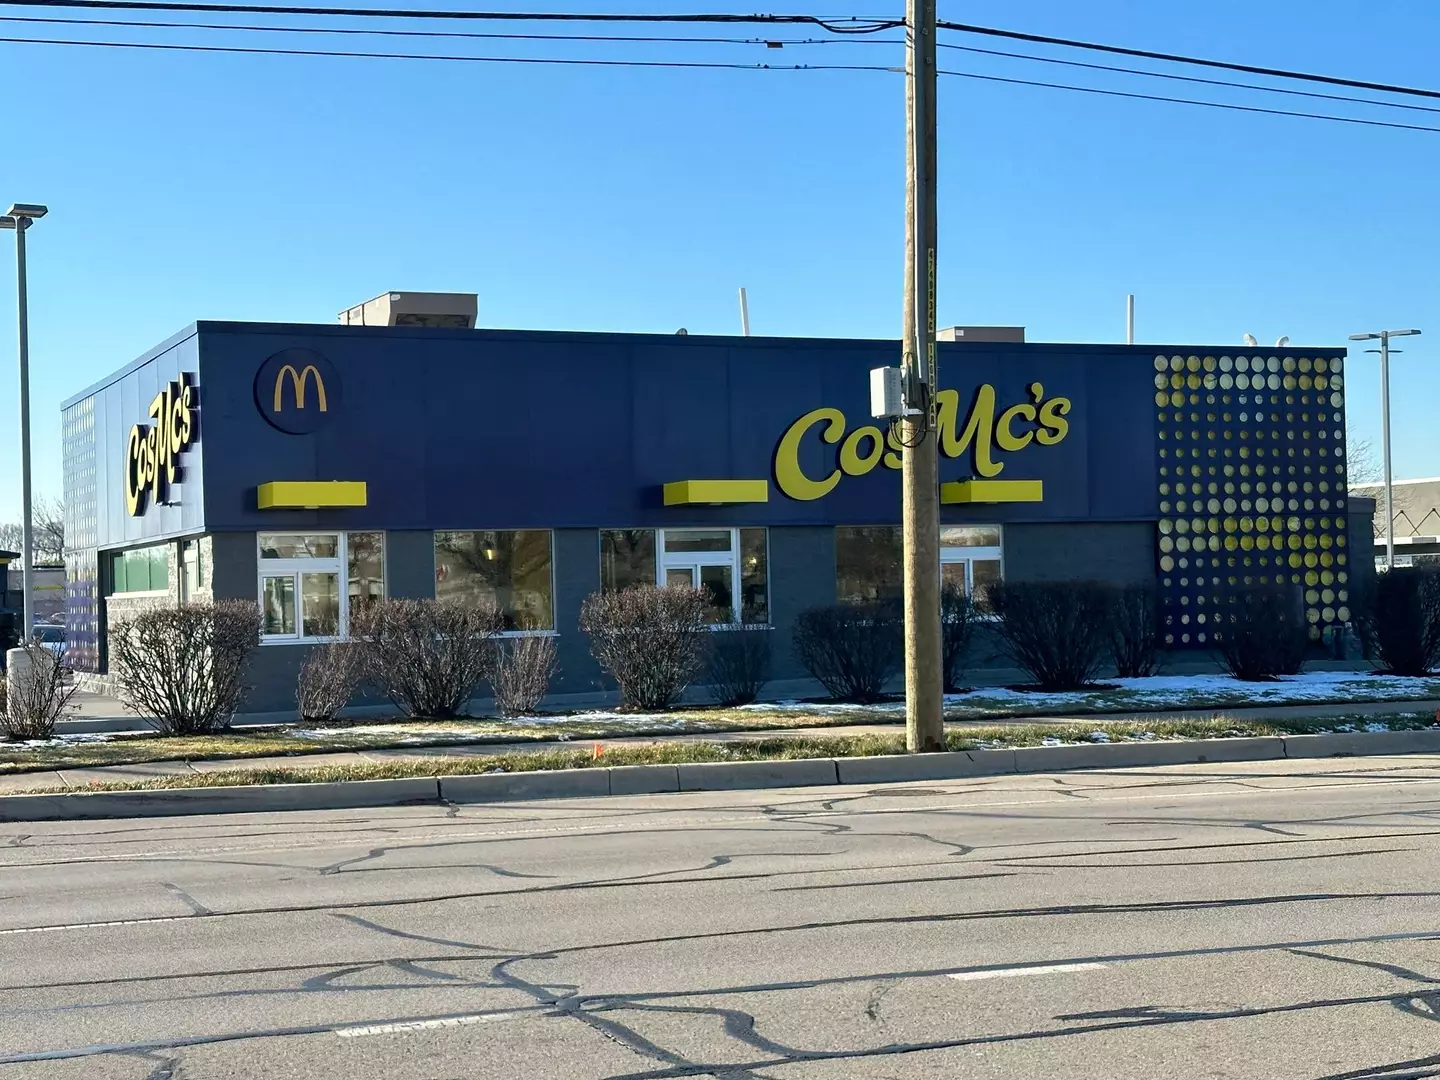 The CosMc's location in Illinois.